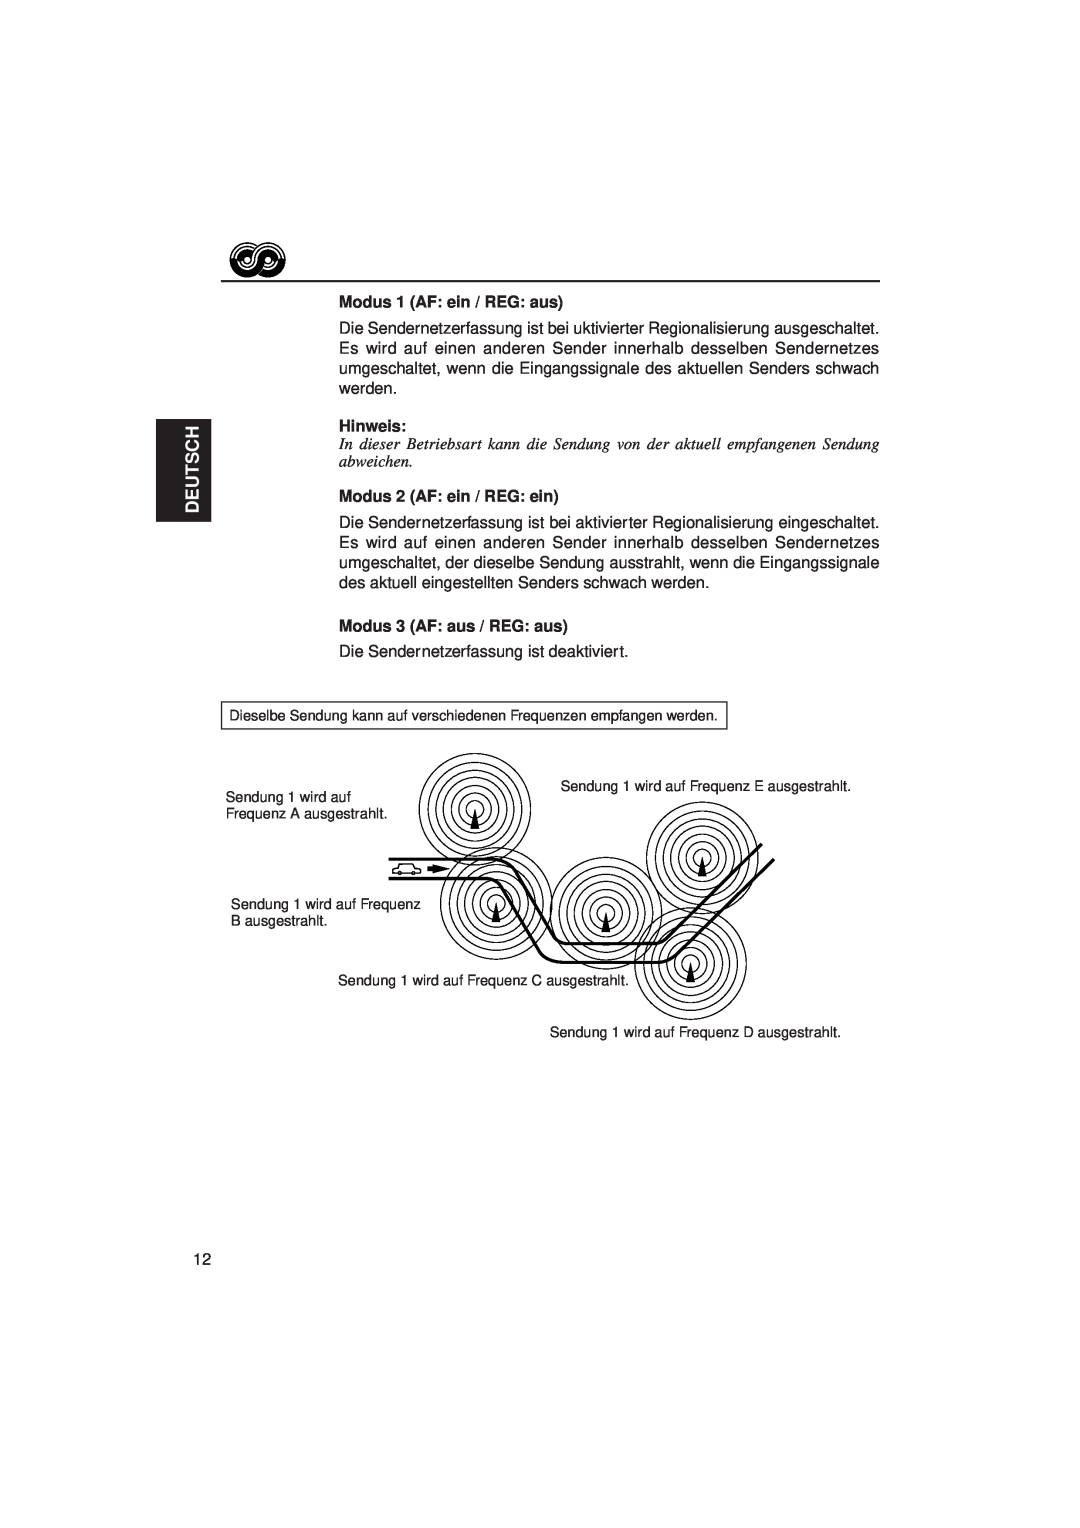 JVC KD-LX3R manual Deutsch, Modus 1 AF ein / REG aus, Hinweis, Modus 2 AF ein / REG ein, Modus 3 AF aus / REG aus 